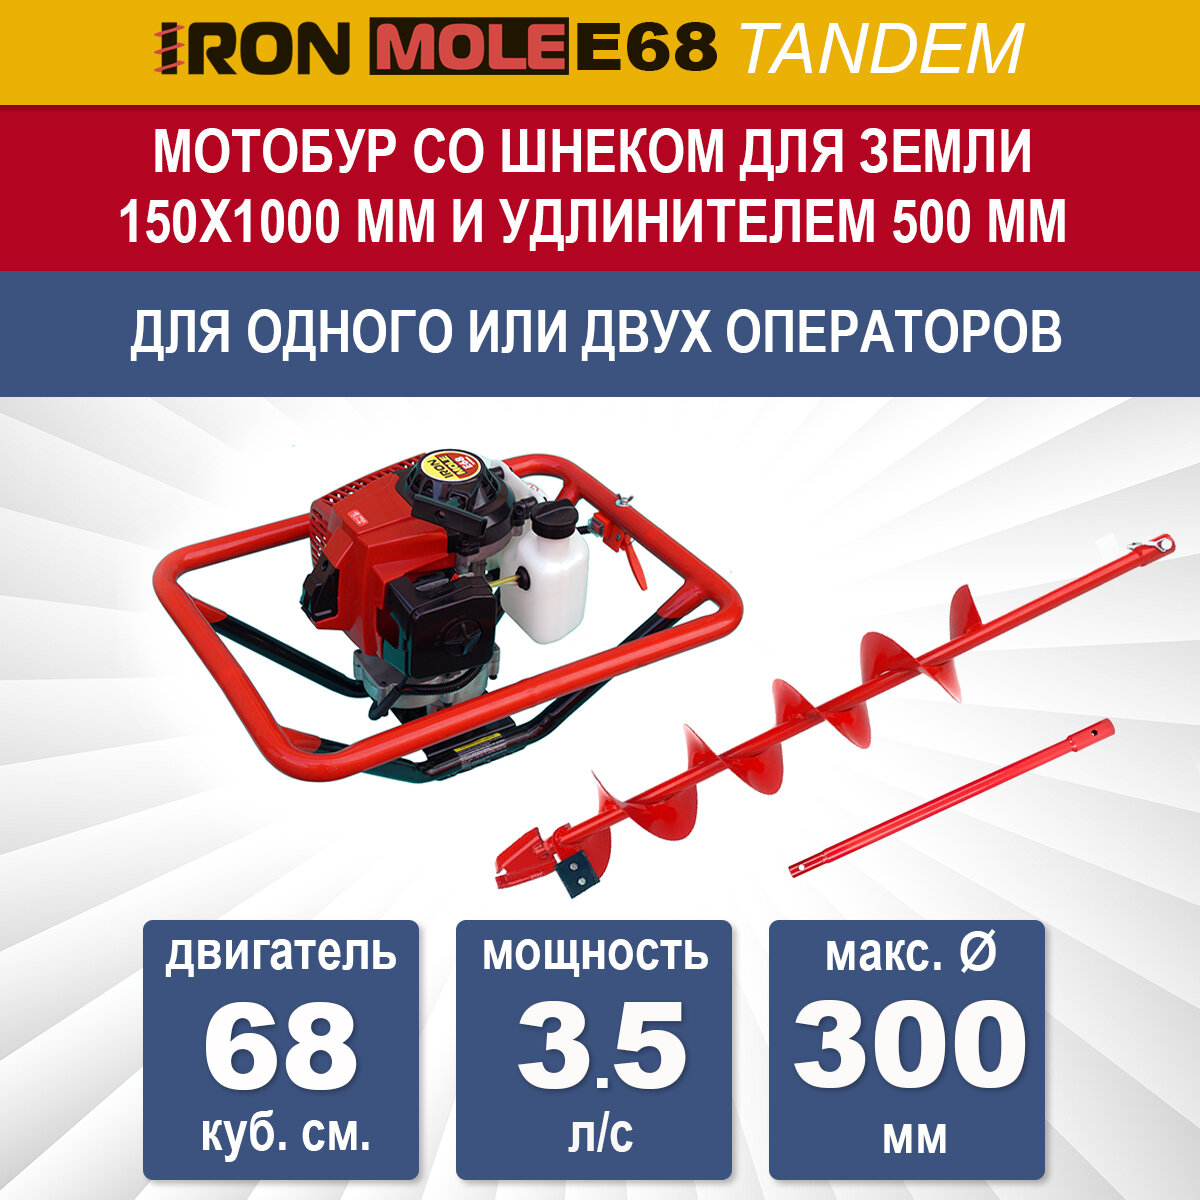 Бензиновый мотобур Iron Mole E68 Tandem со шнеком для земли N1 150Х1000 мм и удлинителем 500 мм, мощность 3.5 л/с, макс. диаметр 300 мм